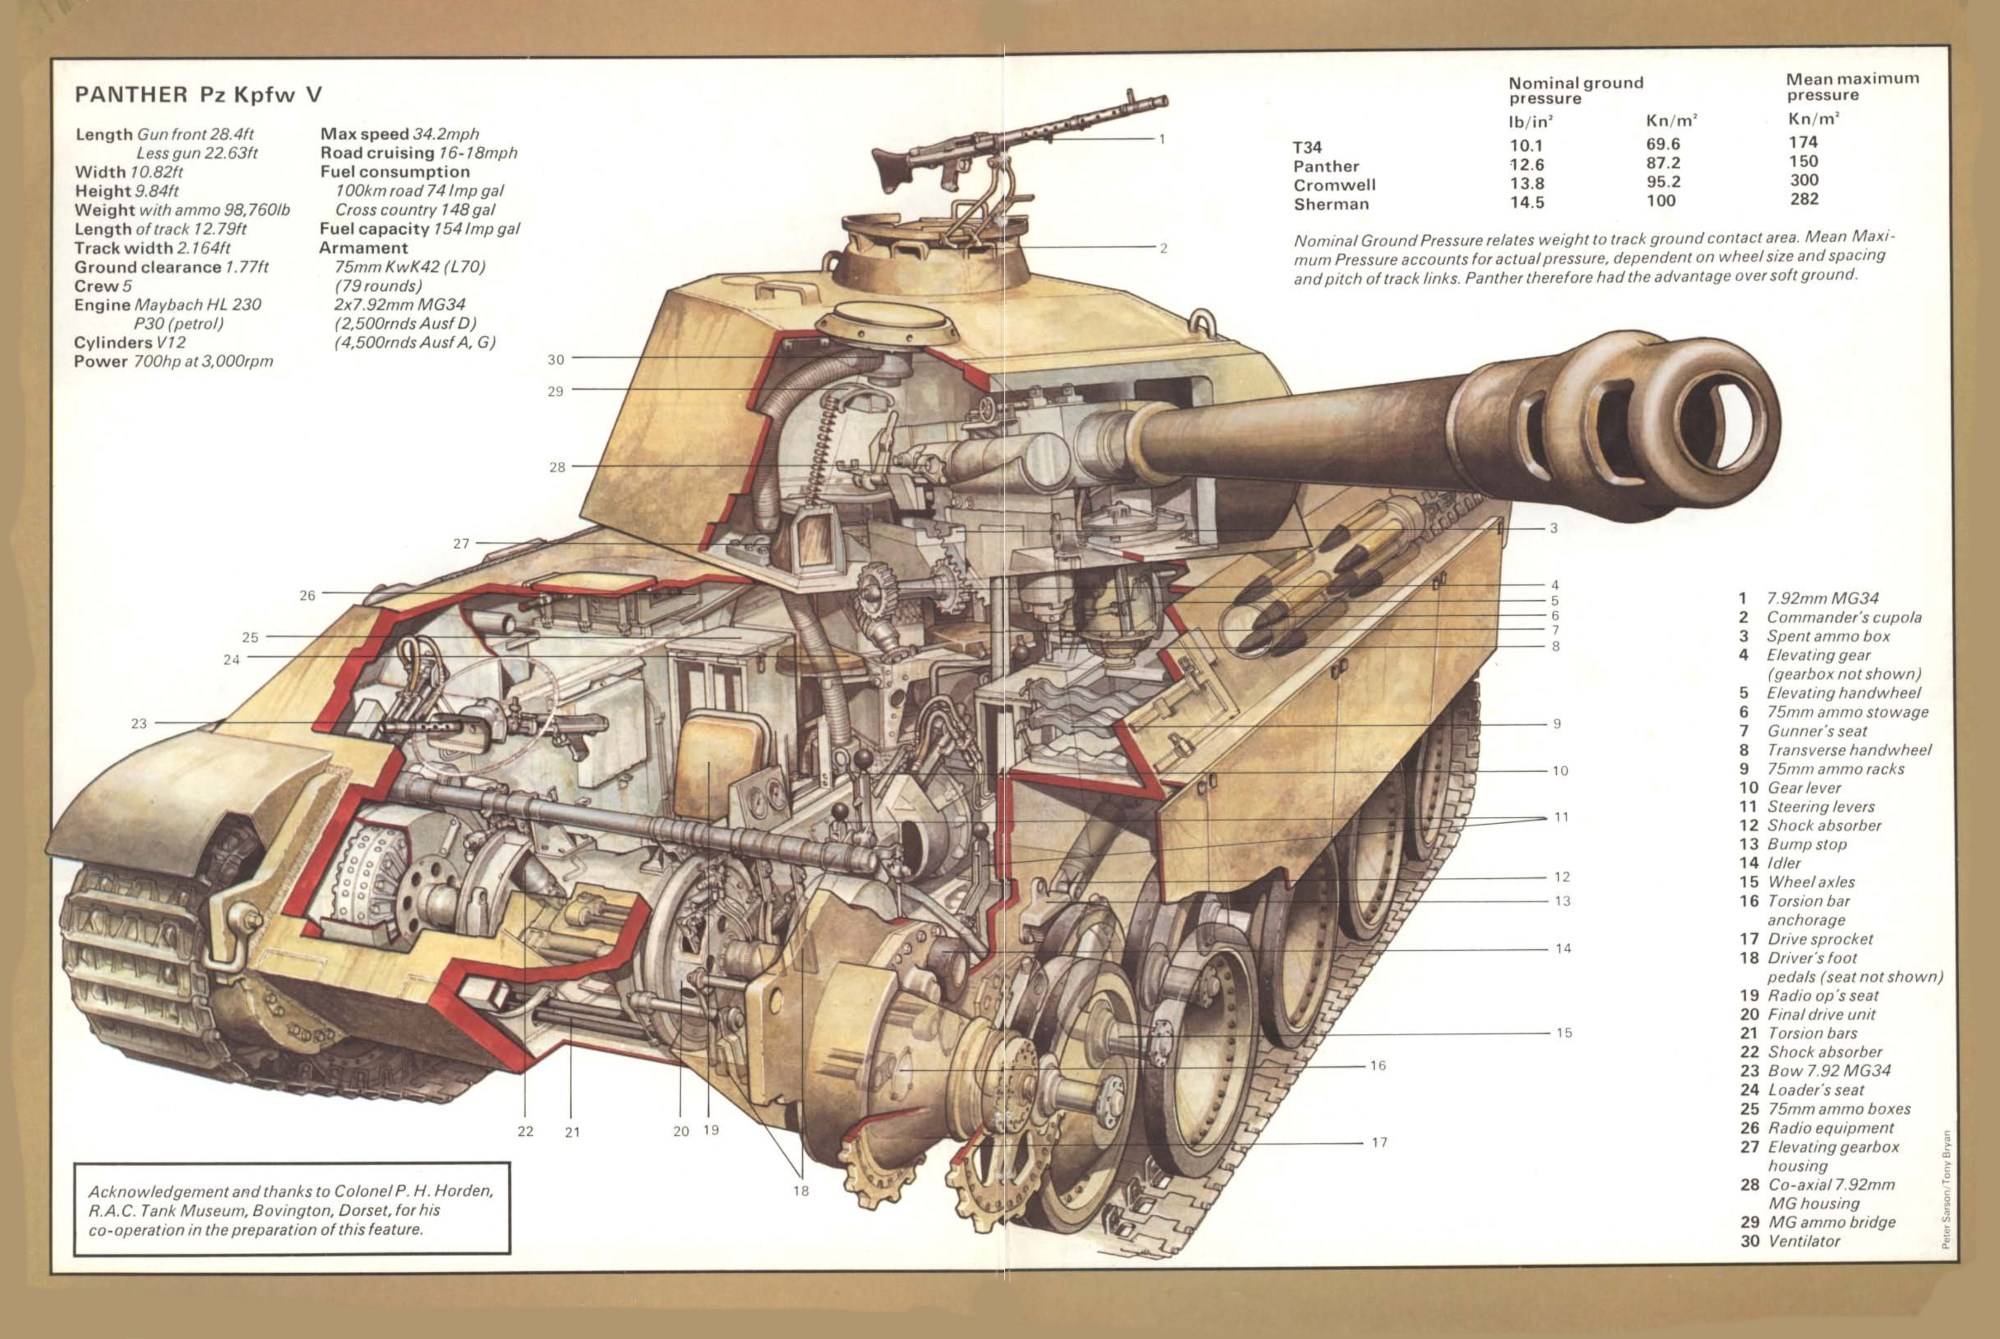 Немецкий танк Pz.Kpfw.V «Пантера»: история создания, технические характеристики, вооружение, боевое применение